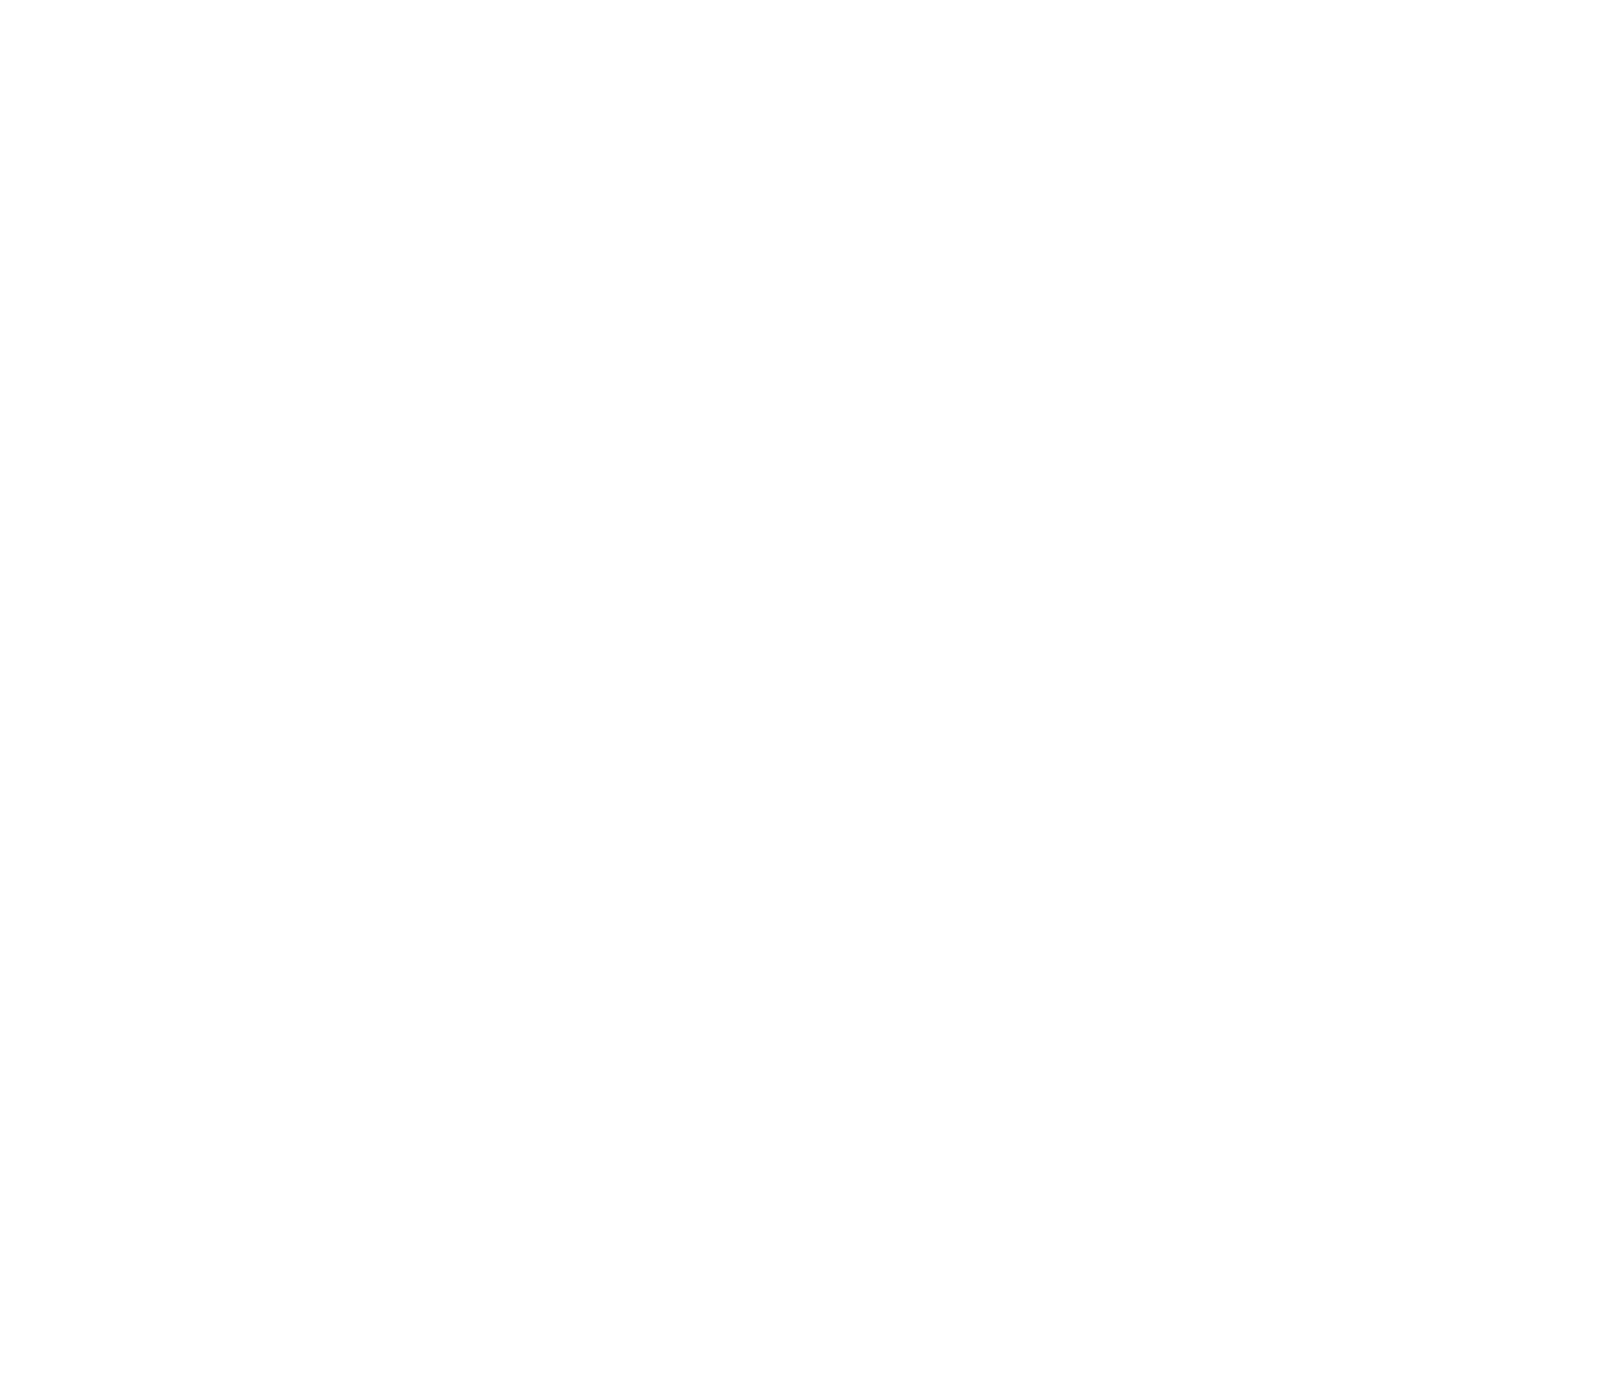 Life moves pretty fast